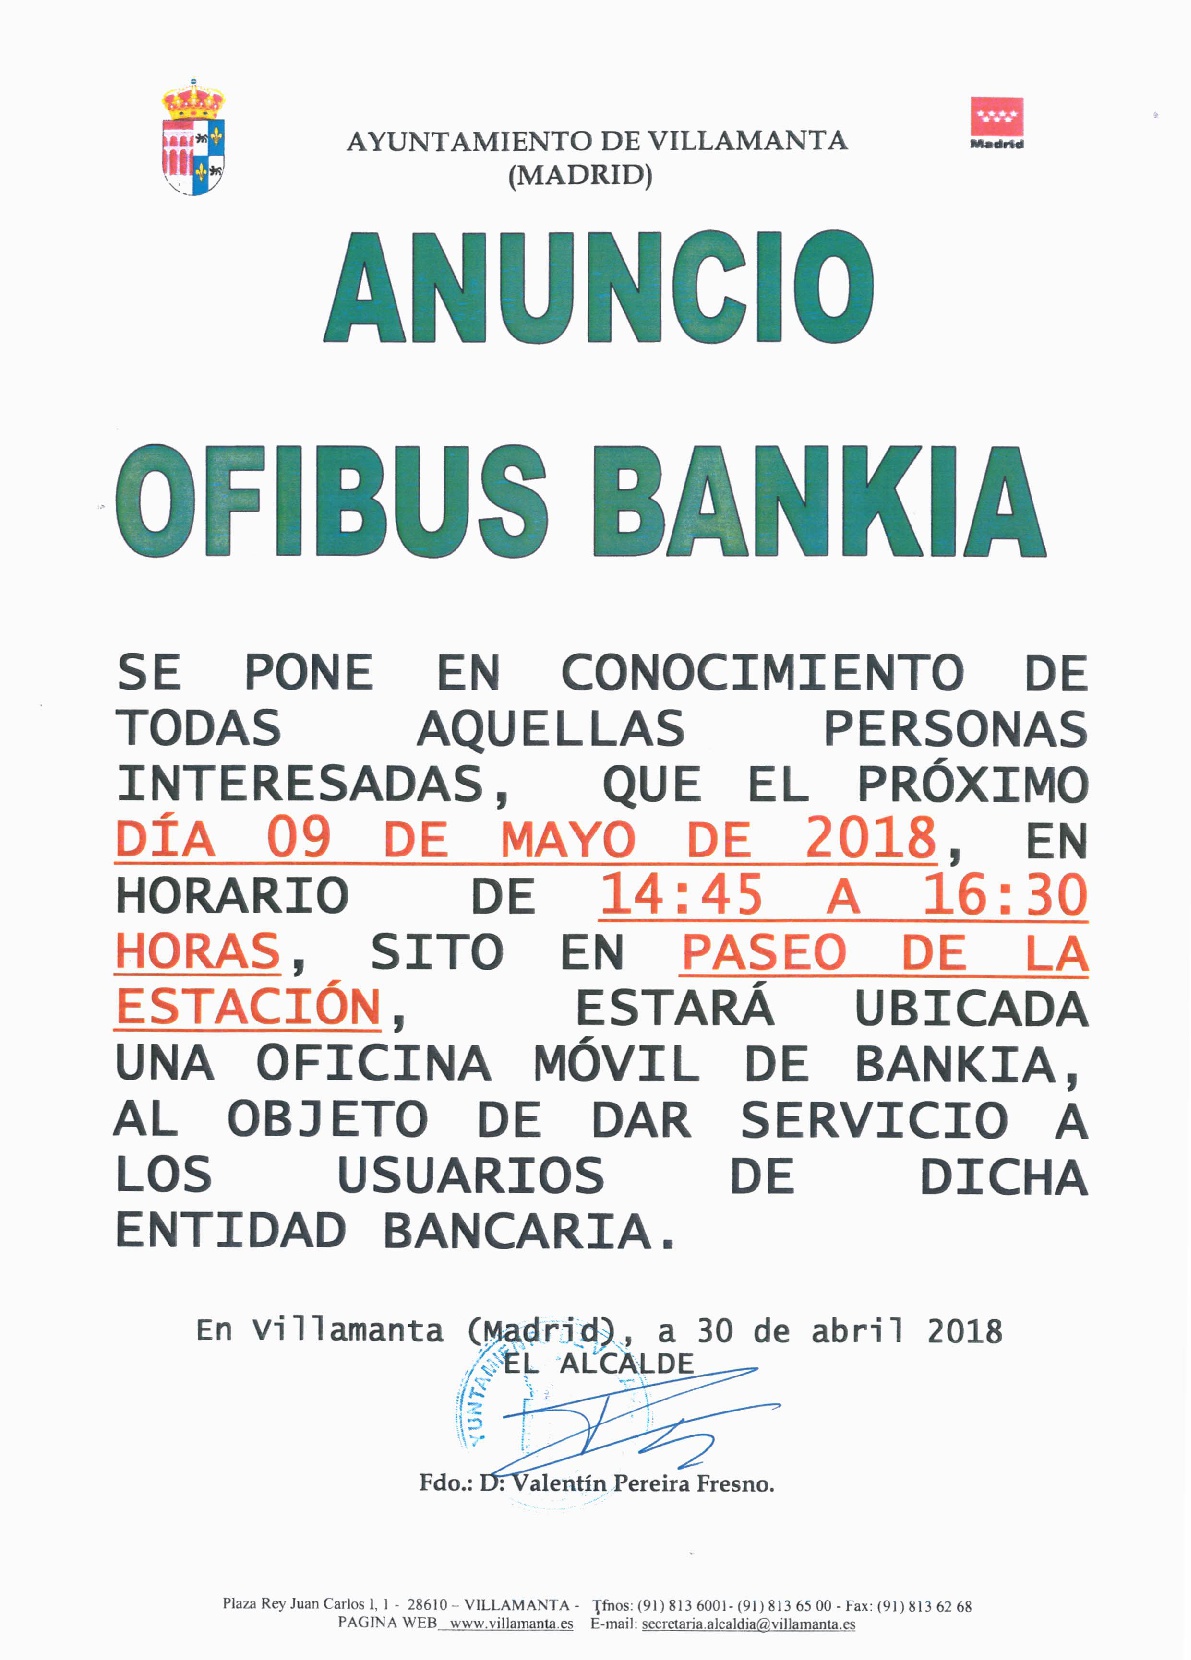 Ofibus Bankia 9 de mayo de 2018